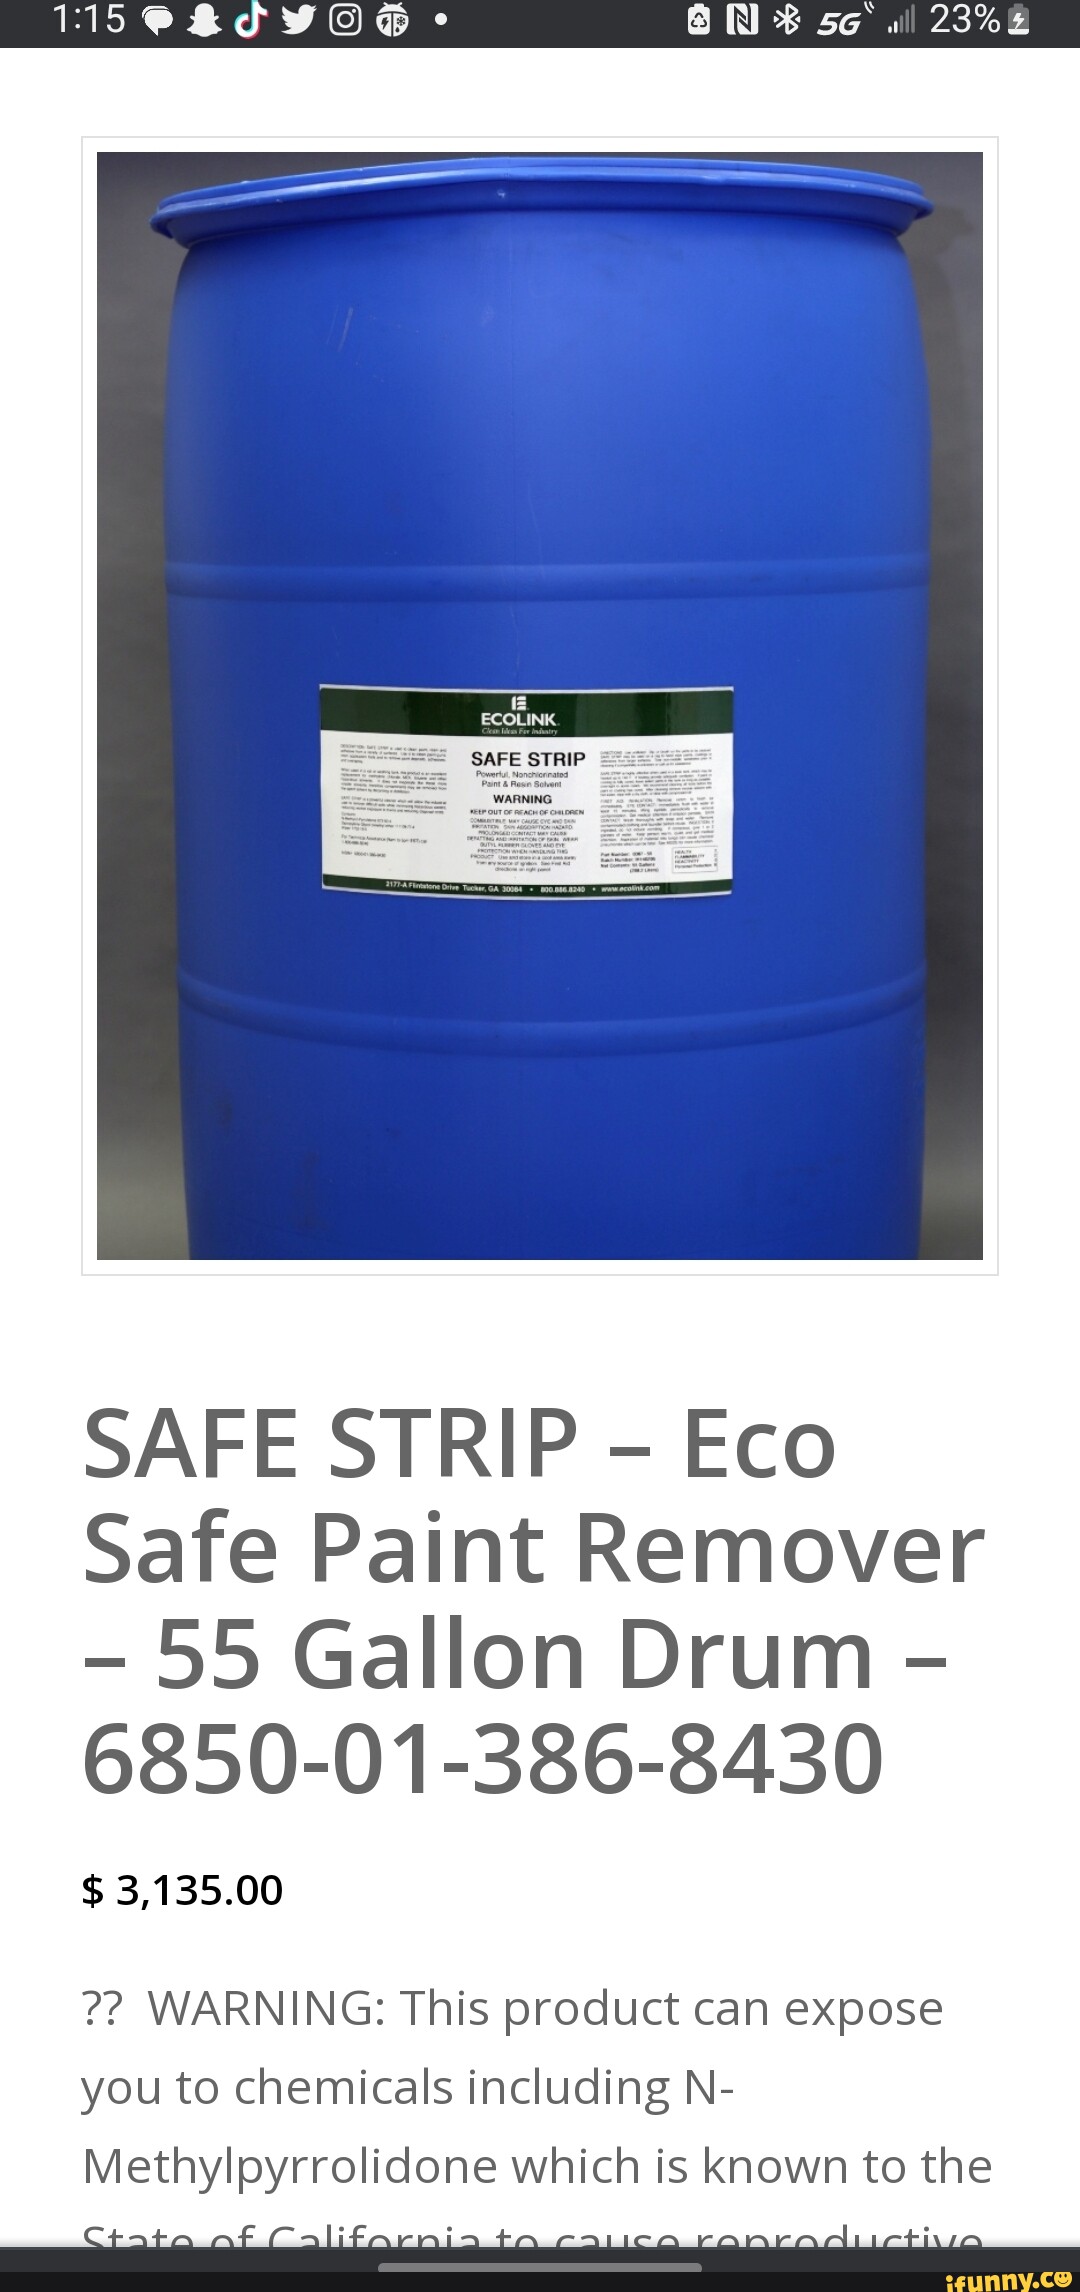 SAFE STRIP - Eco Safe Paint Remover - 55 Gallon Drum - 6850-01-386